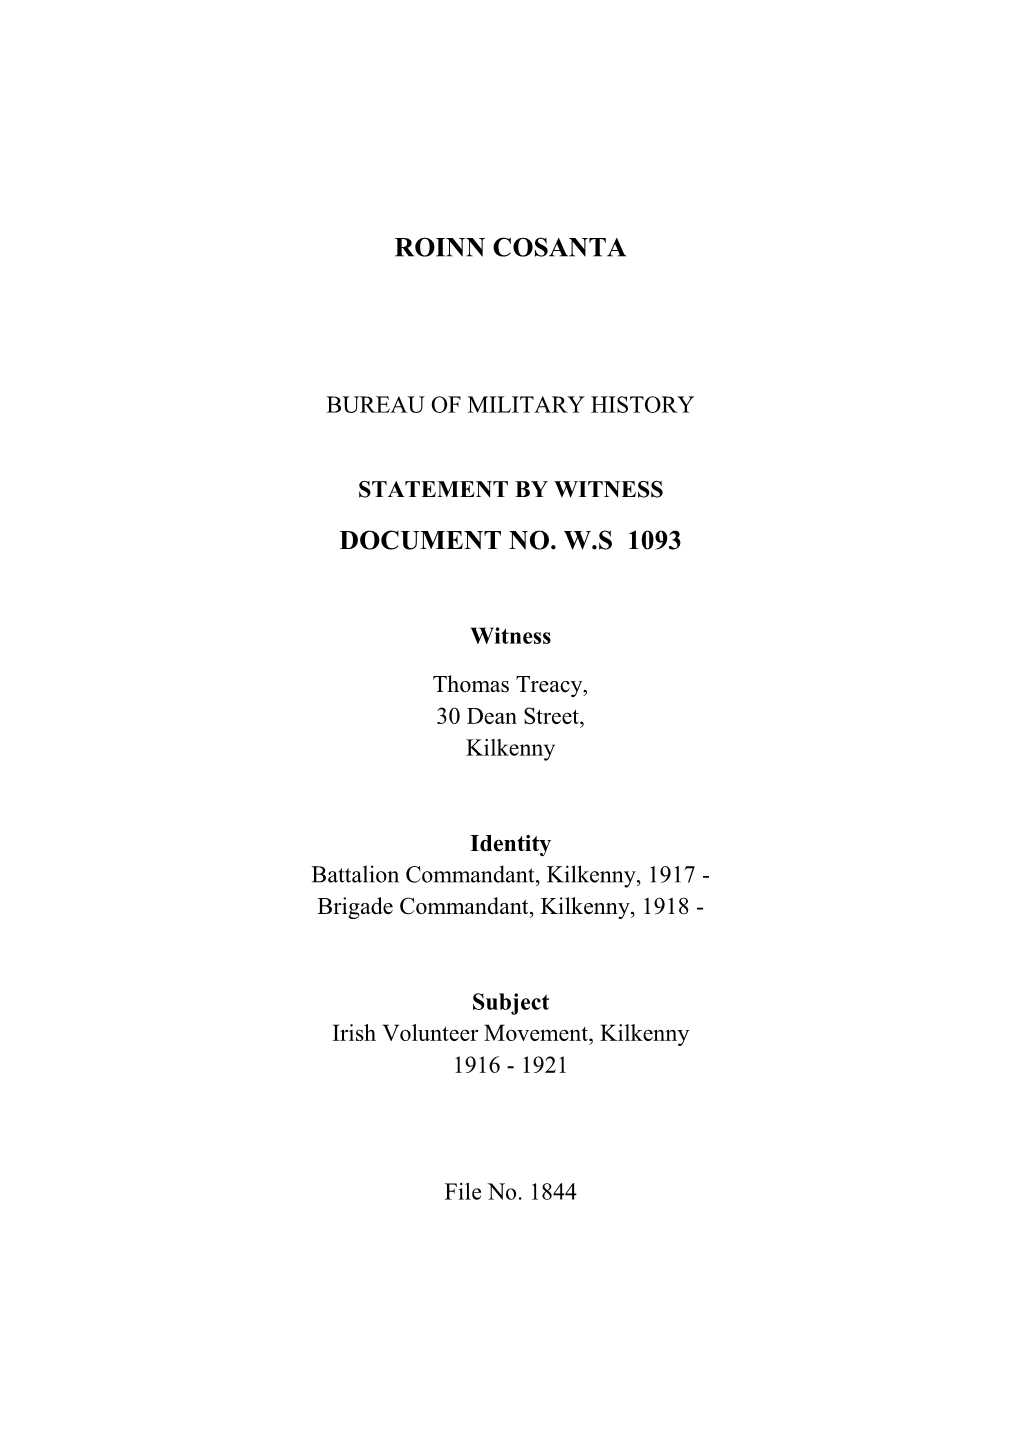 Roinn Cosanta Document No. W.S 1093